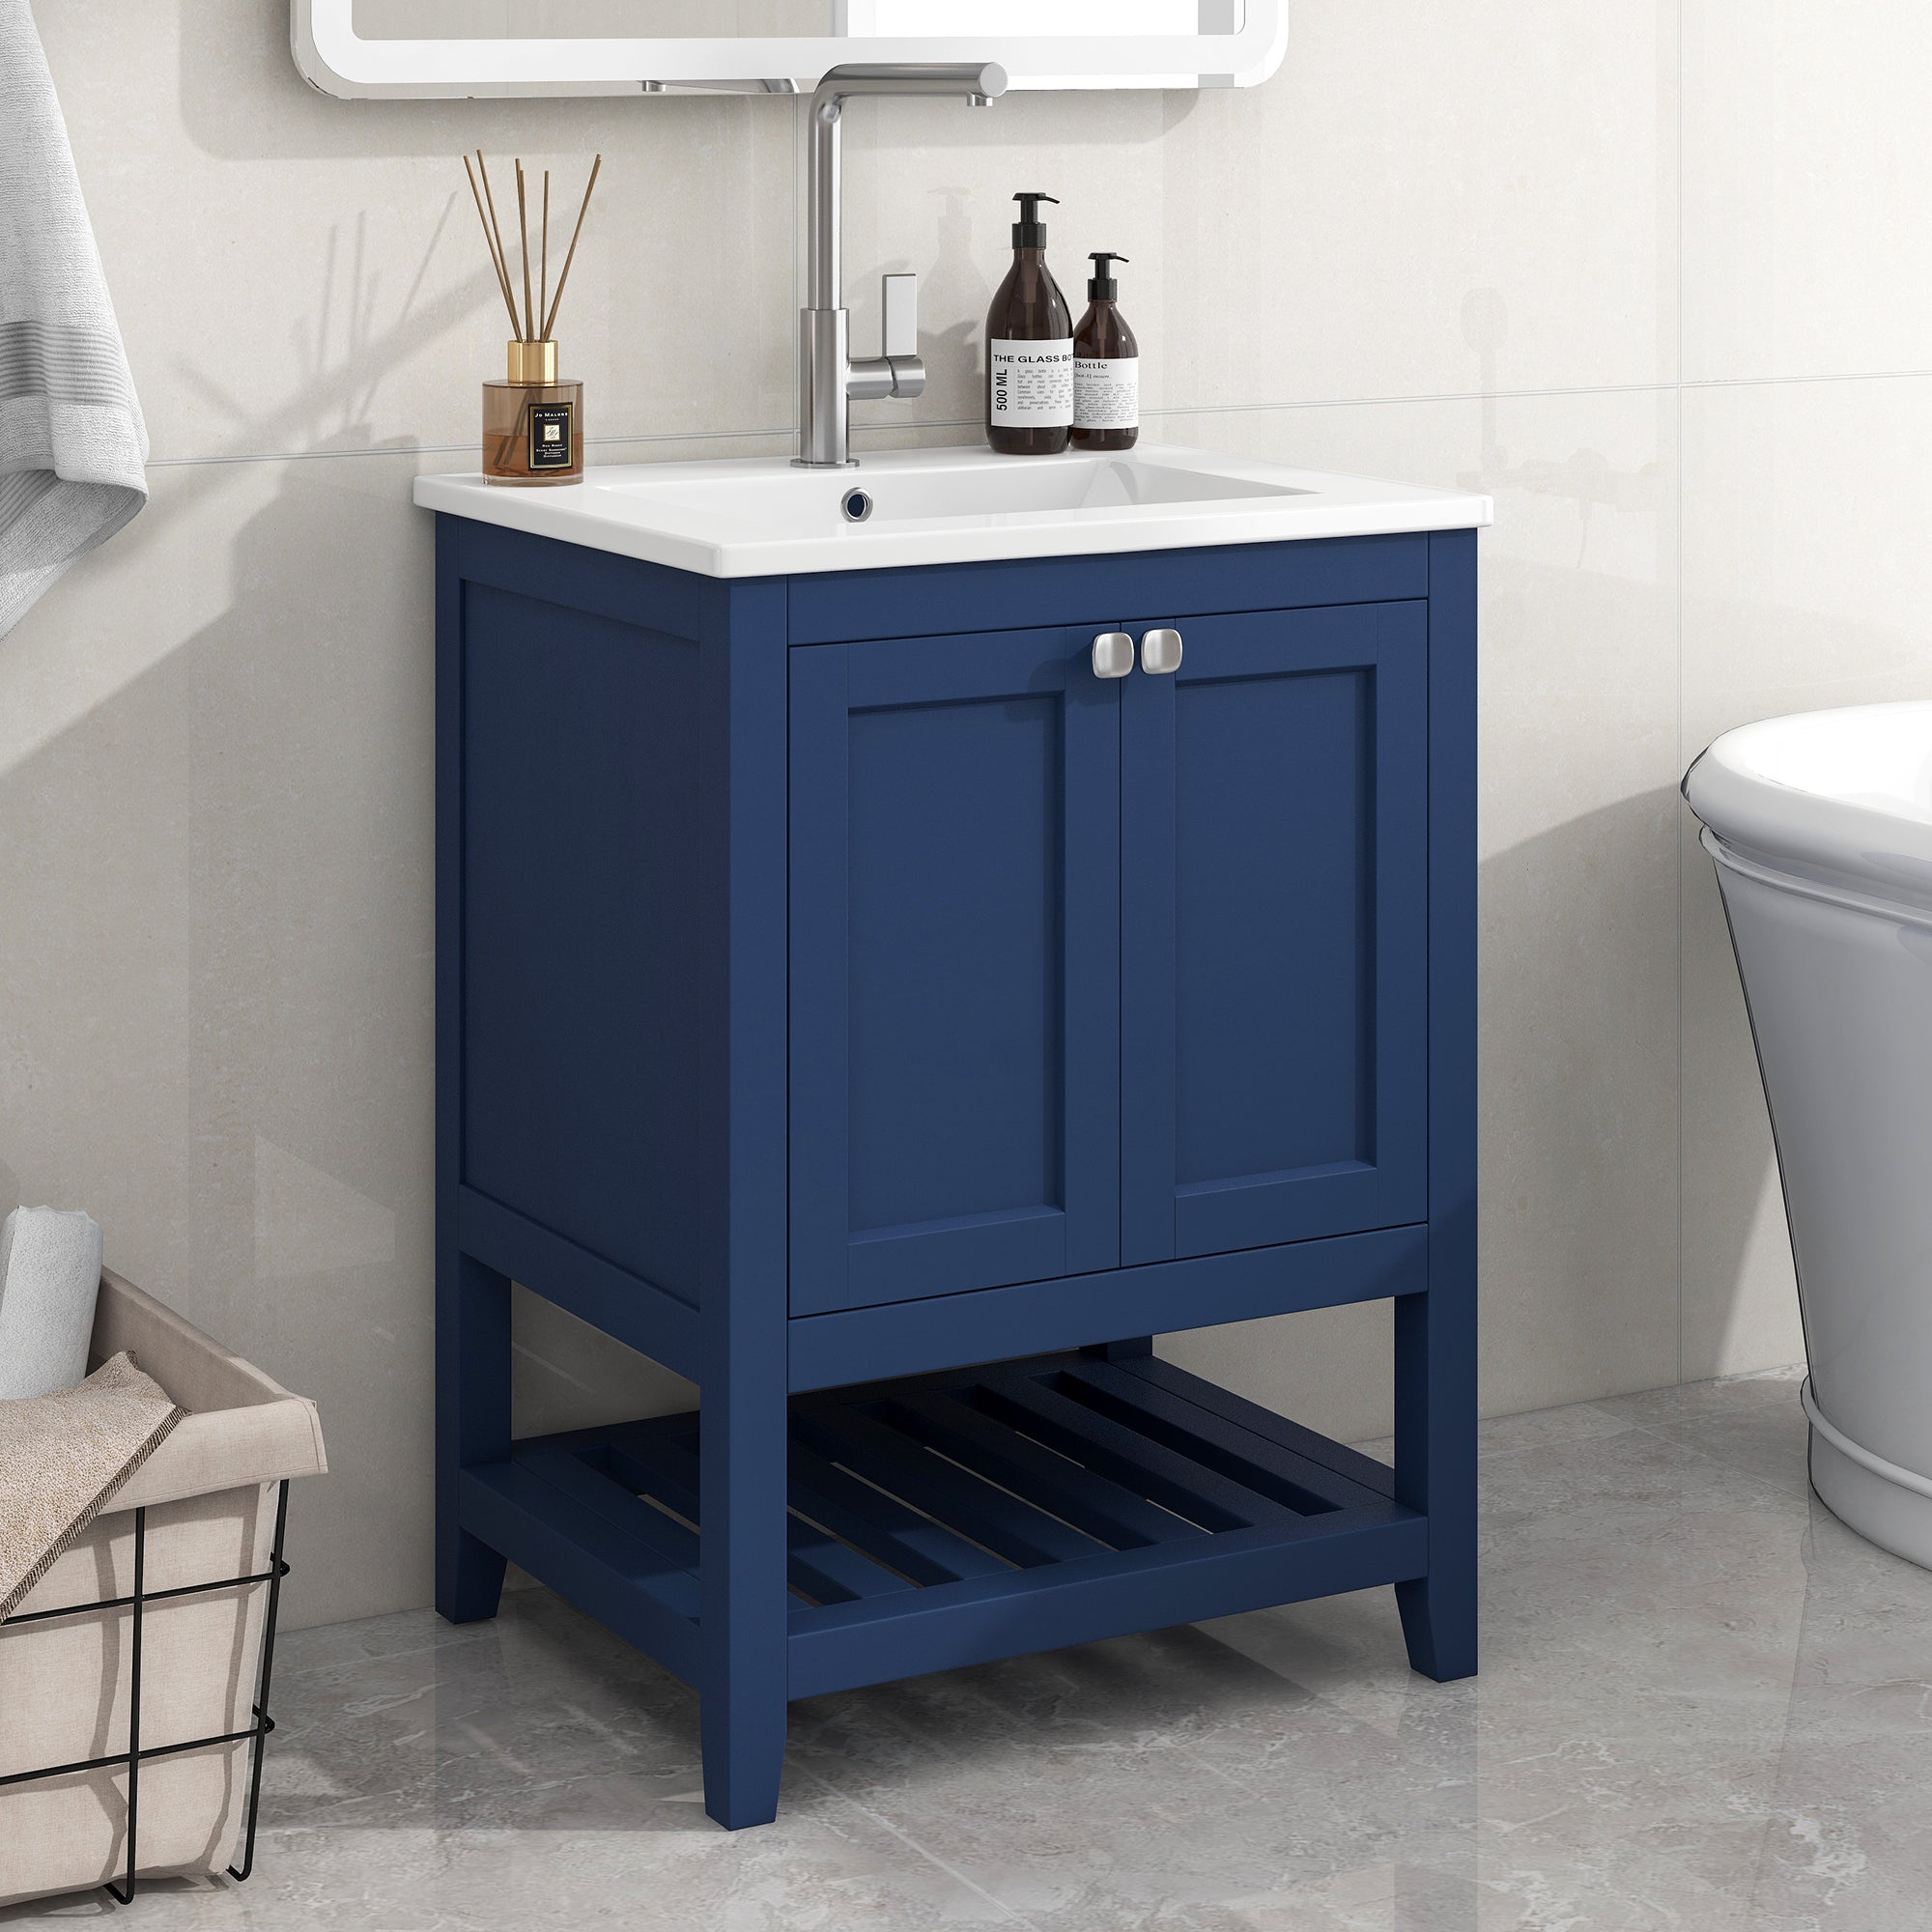 okwish Badezimmerwaschbecken 61*46*90 cm, bodenstehendes Badezimmer-Waschtischmöbel, Einzelwaschbecken mit Unterschrank, mit Keramikwaschbecken, Blau